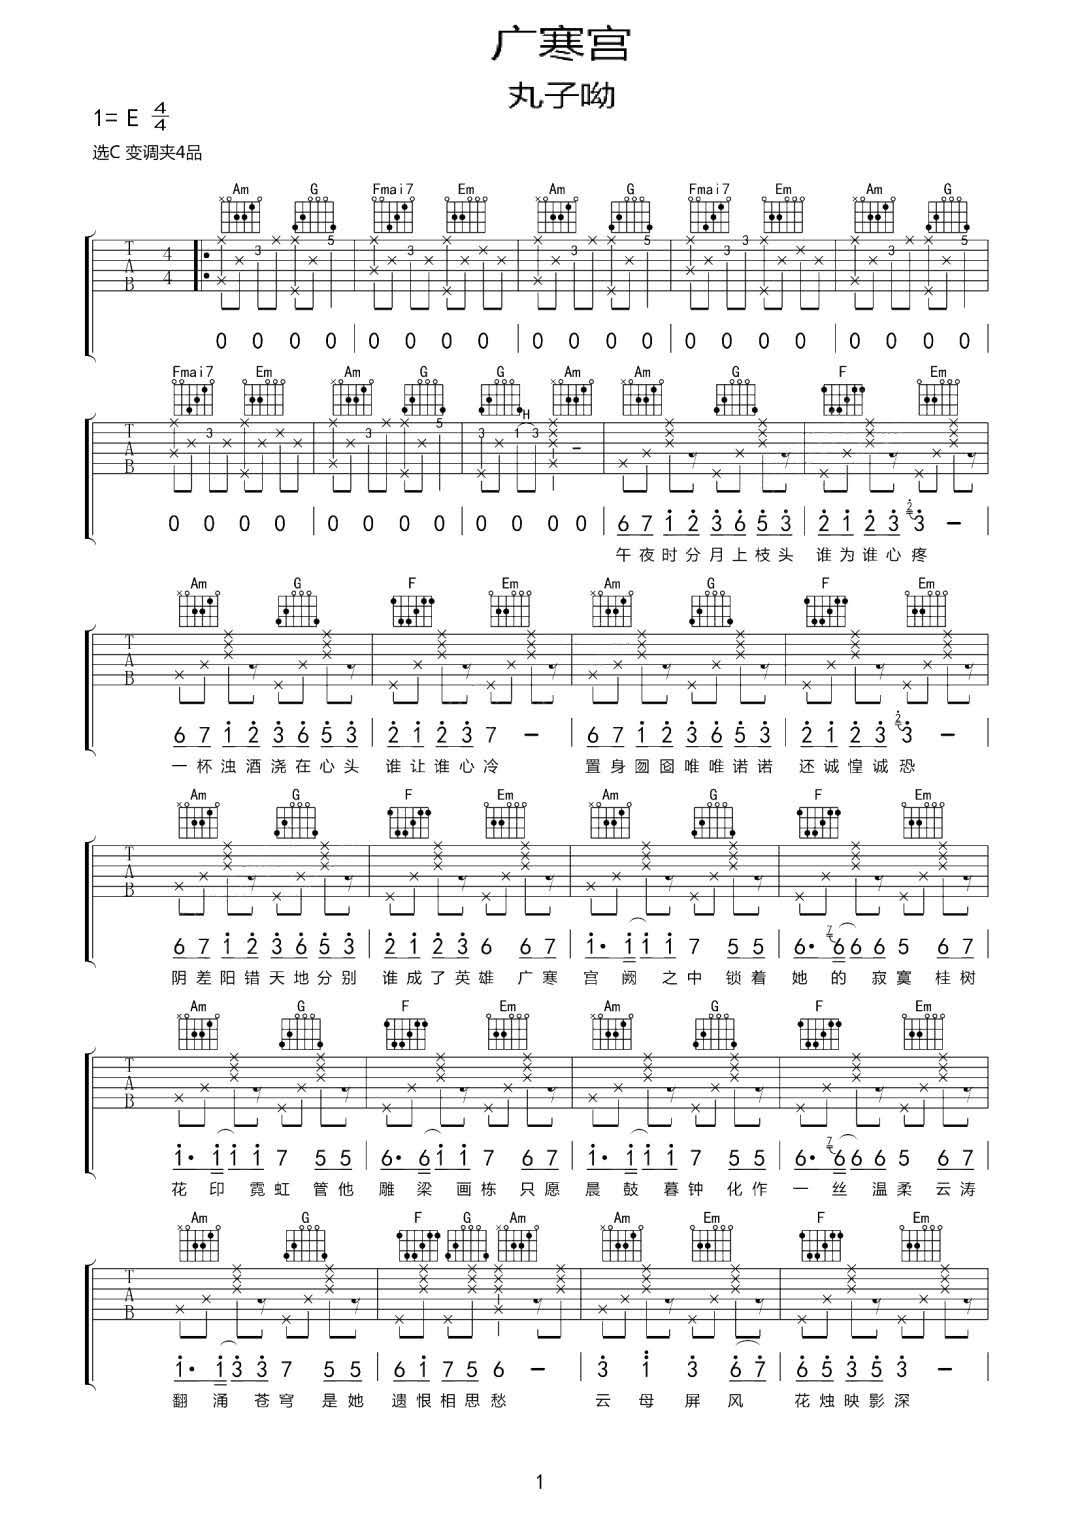 吉他谱-图片吉他谱-吉他弹唱谱-指弹谱大全 - 第 10 页 - GTP吉他谱